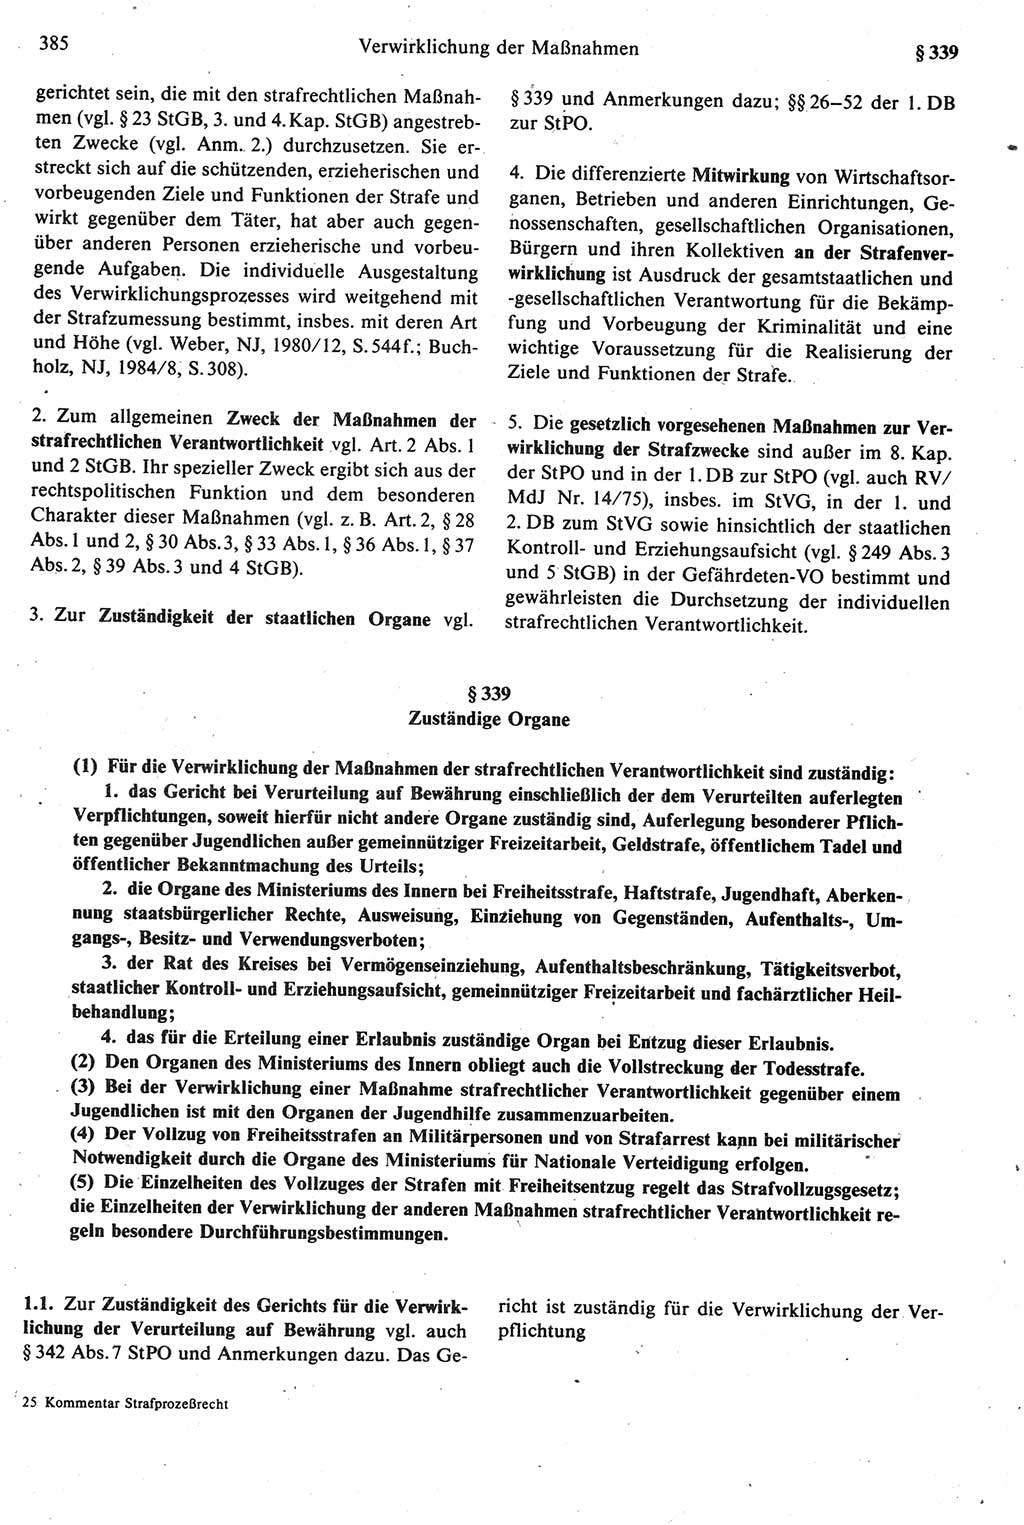 Strafprozeßrecht der DDR [Deutsche Demokratische Republik], Kommentar zur Strafprozeßordnung (StPO) 1987, Seite 385 (Strafprozeßr. DDR Komm. StPO 1987, S. 385)